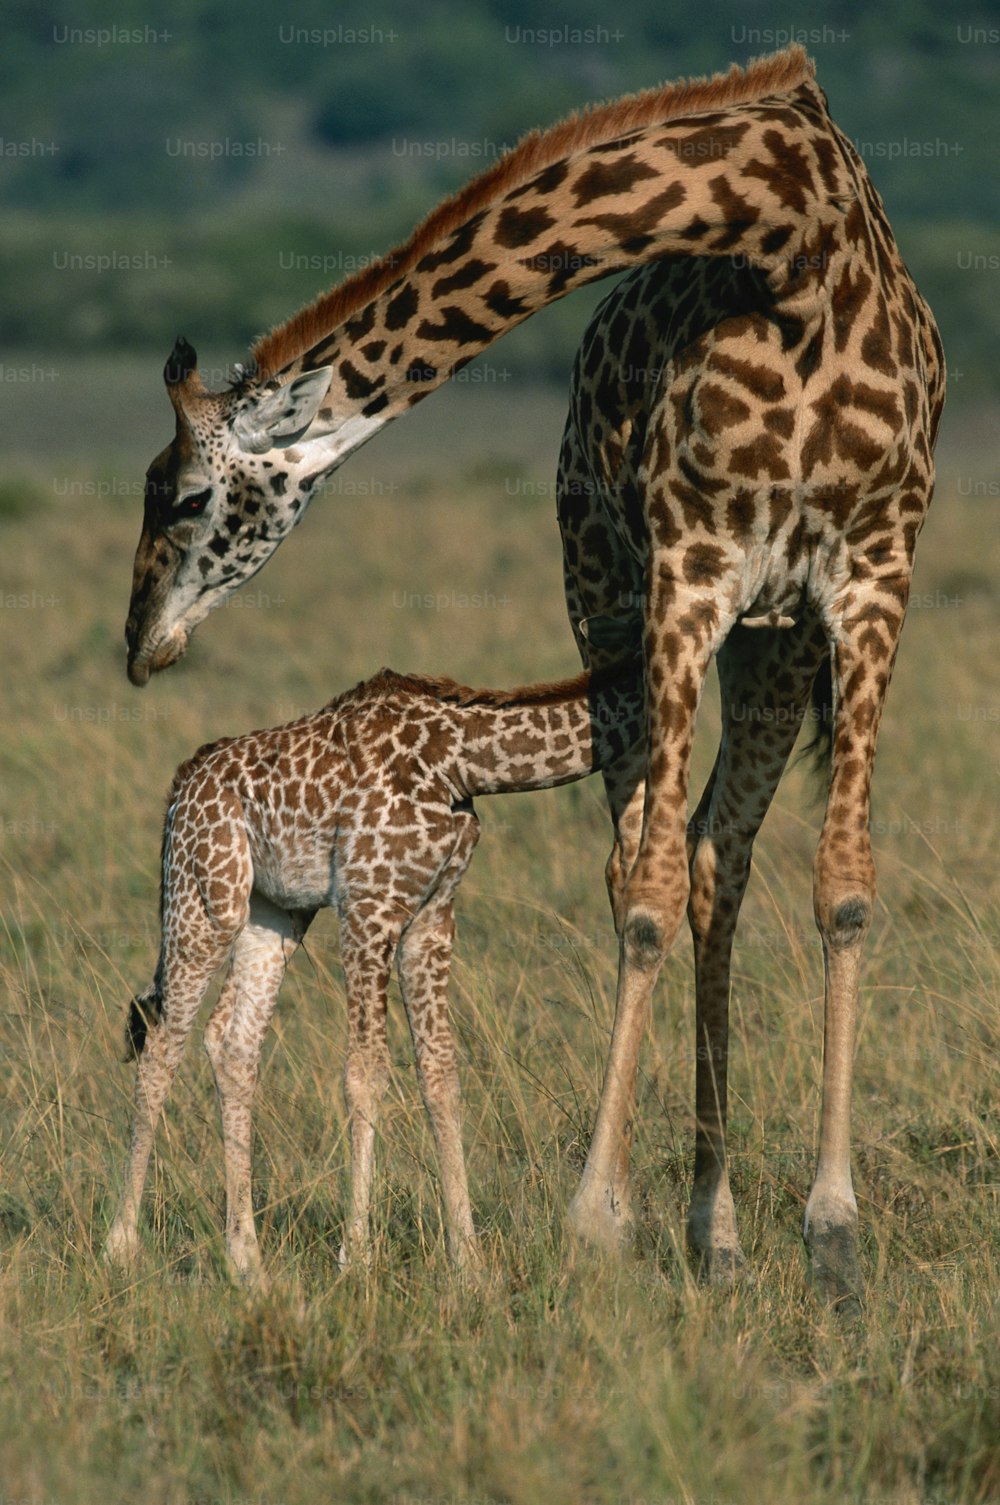 Eine Babygiraffe, die neben einer erwachsenen Giraffe steht